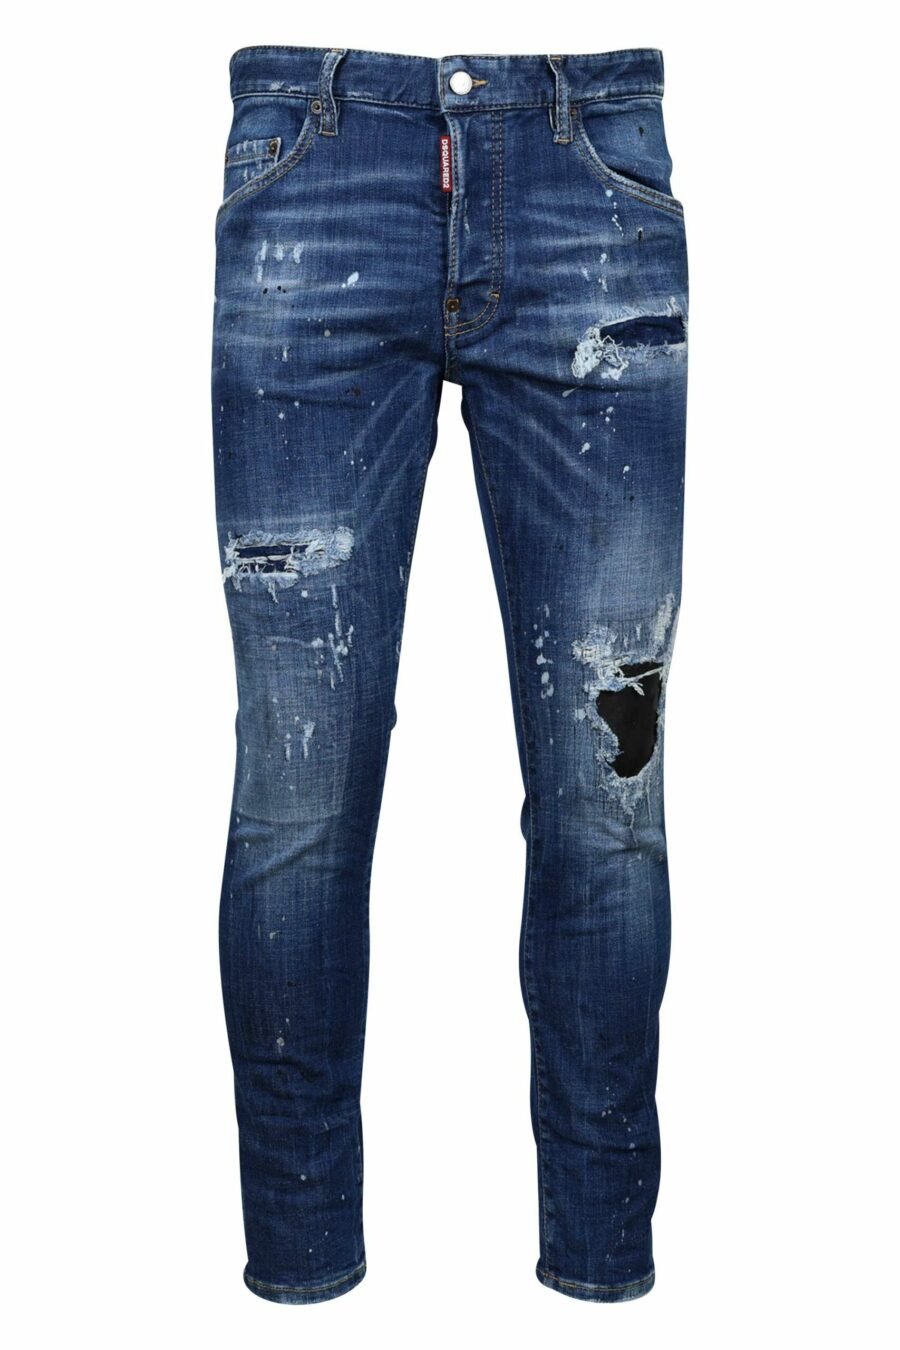 Calças de ganga "skater jean" azuis com rasgões e desgastadas - 8054148124687 1 scaled